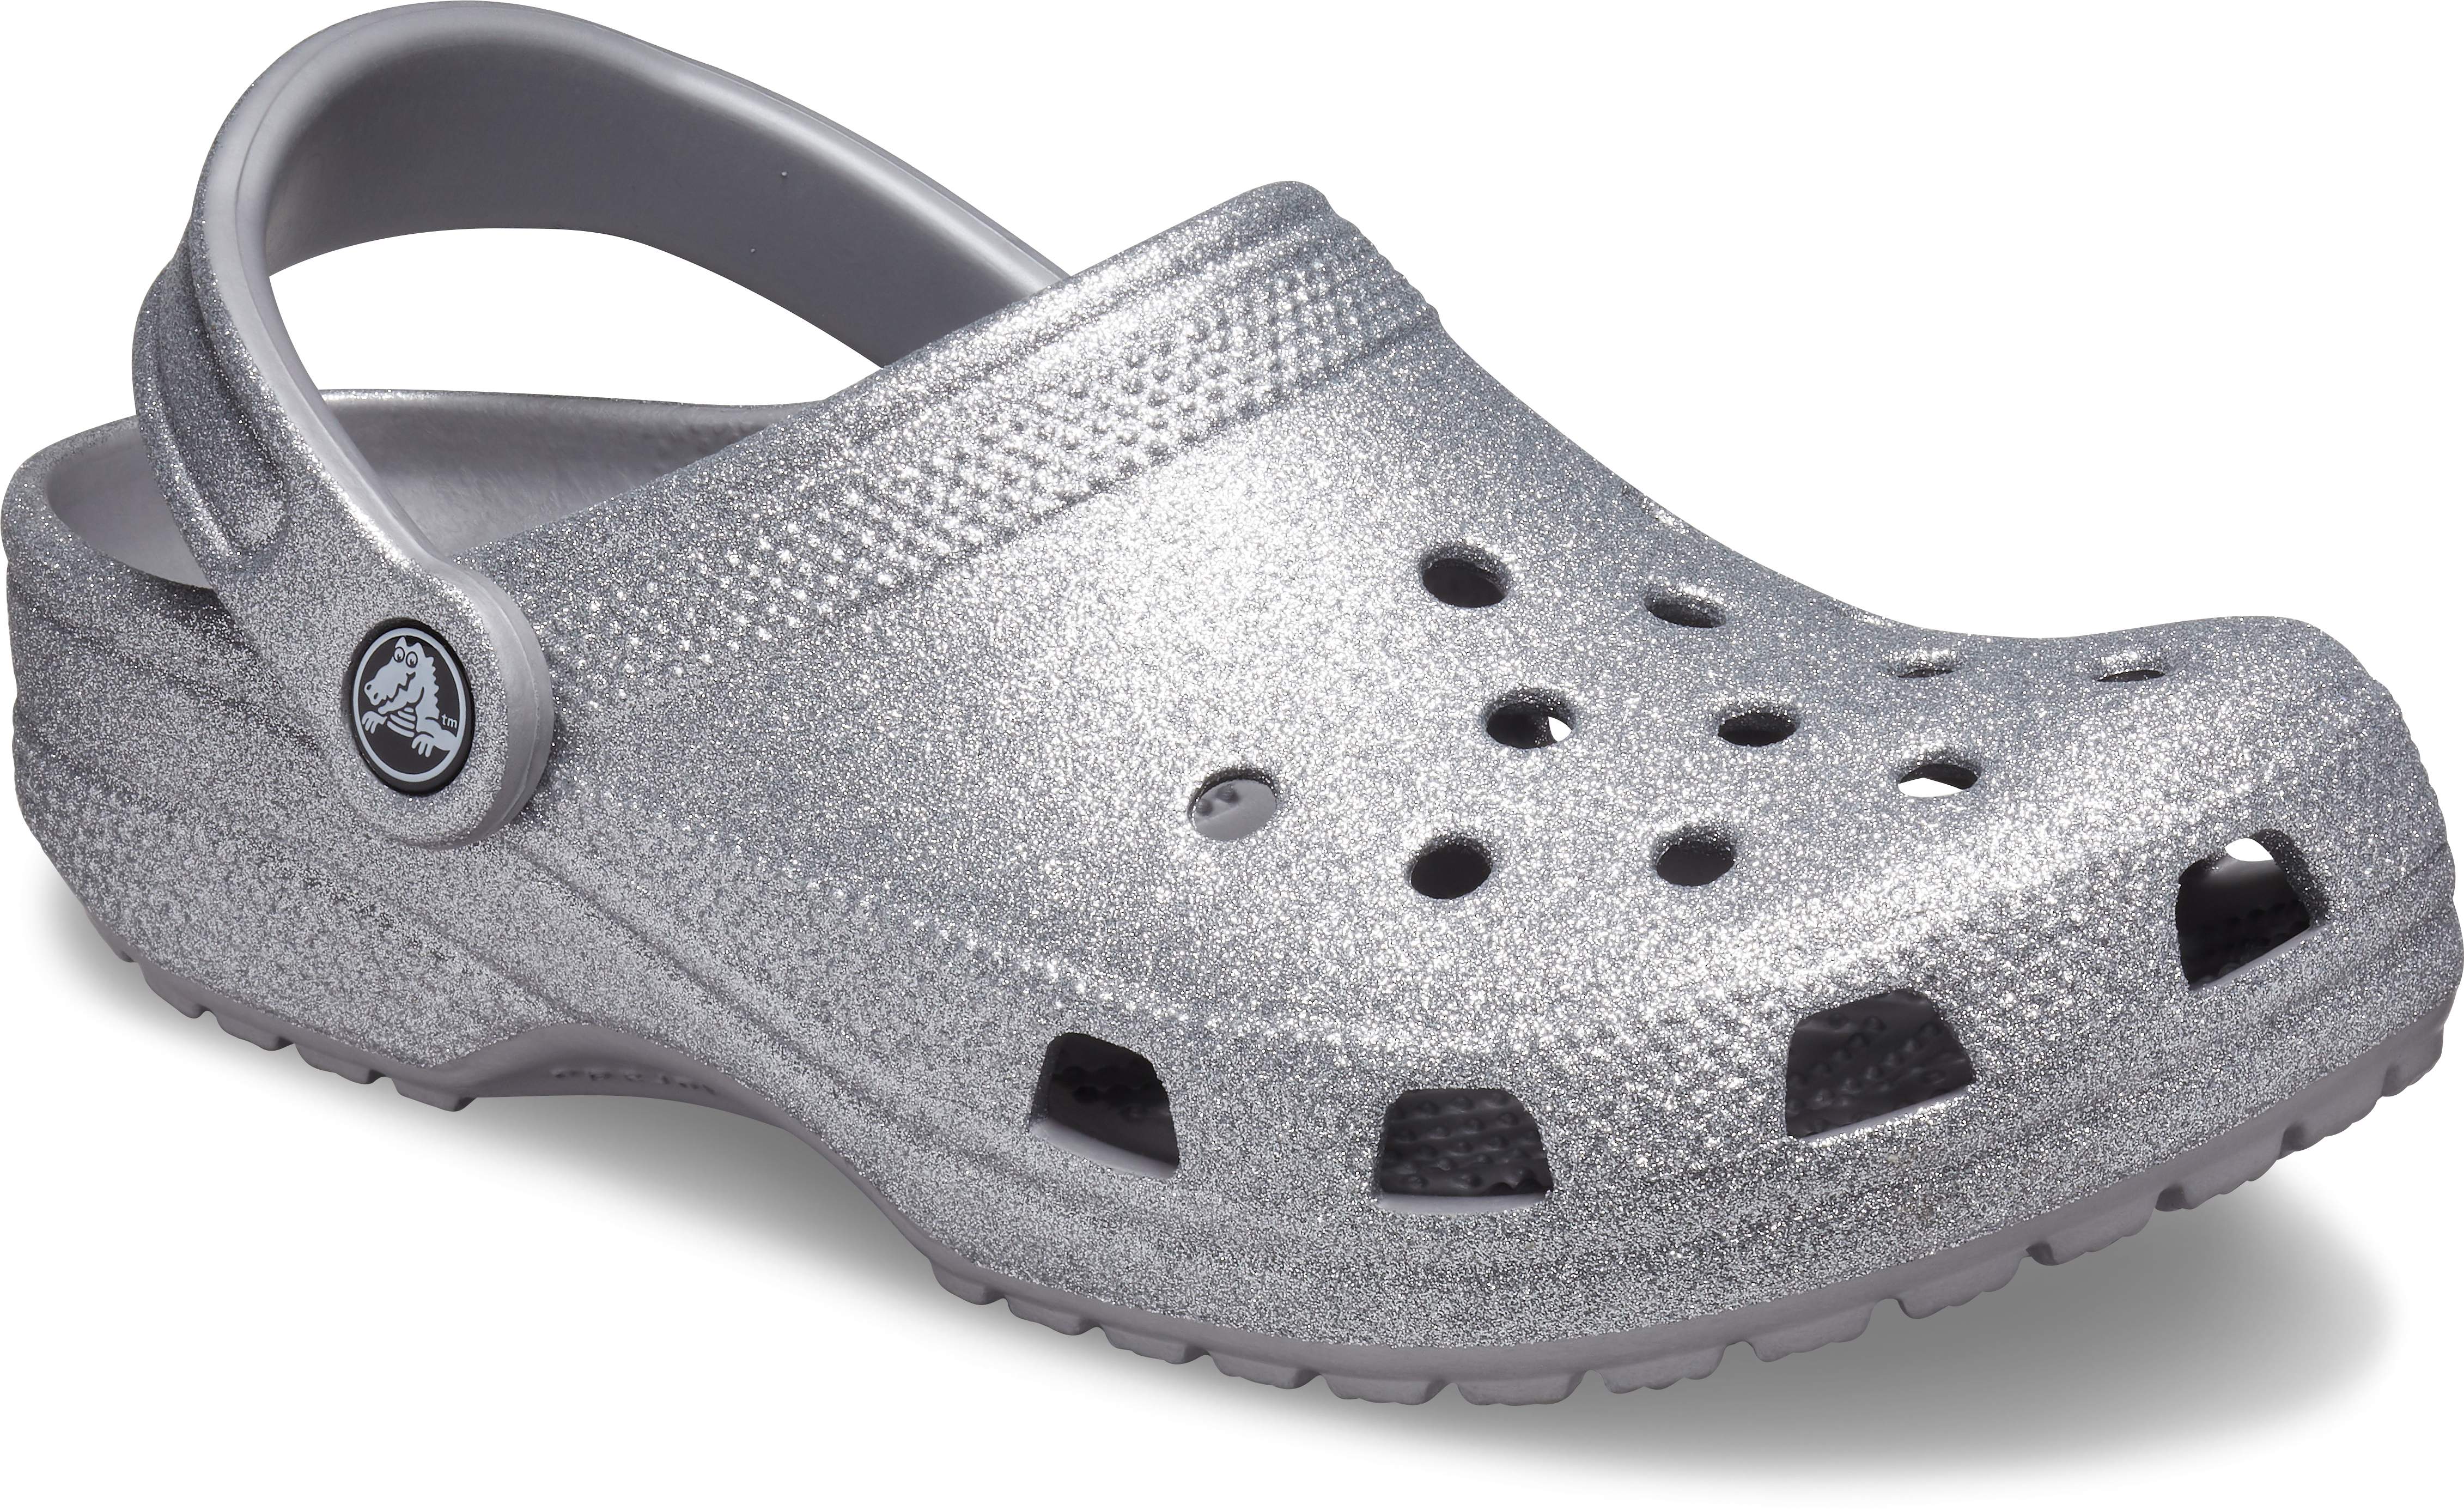 silver sparkly crocs